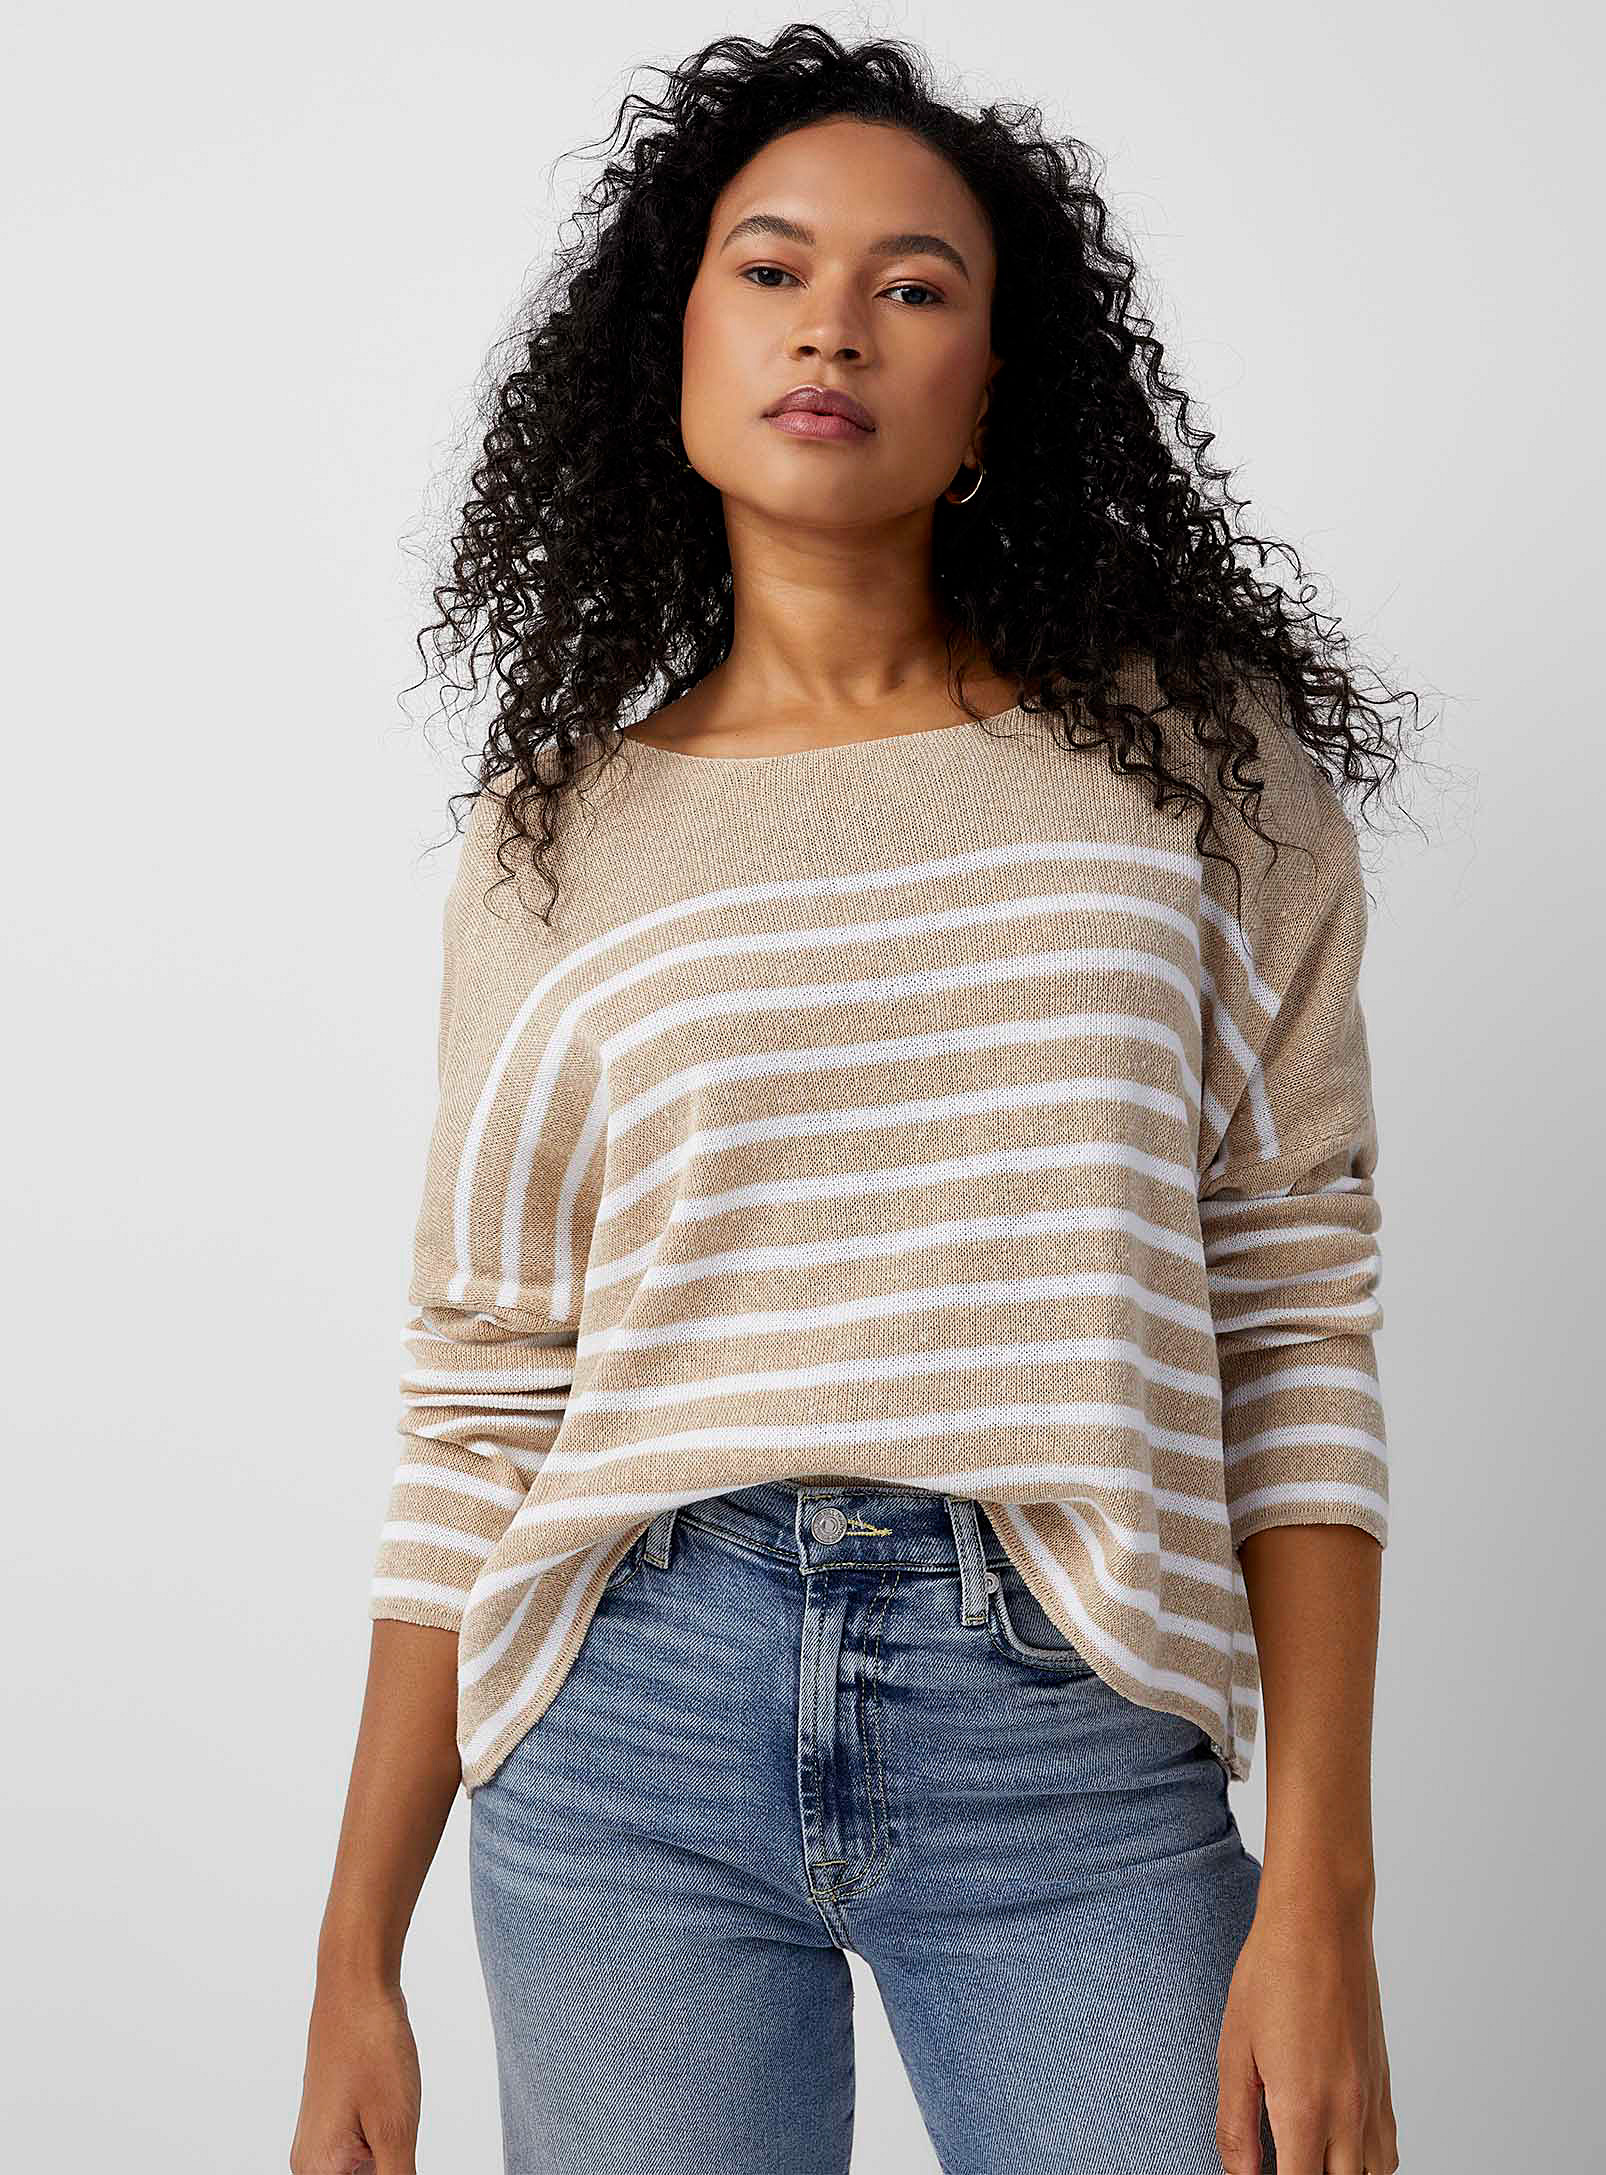 Contemporaine - Women's Striped pure cotton loose sweater